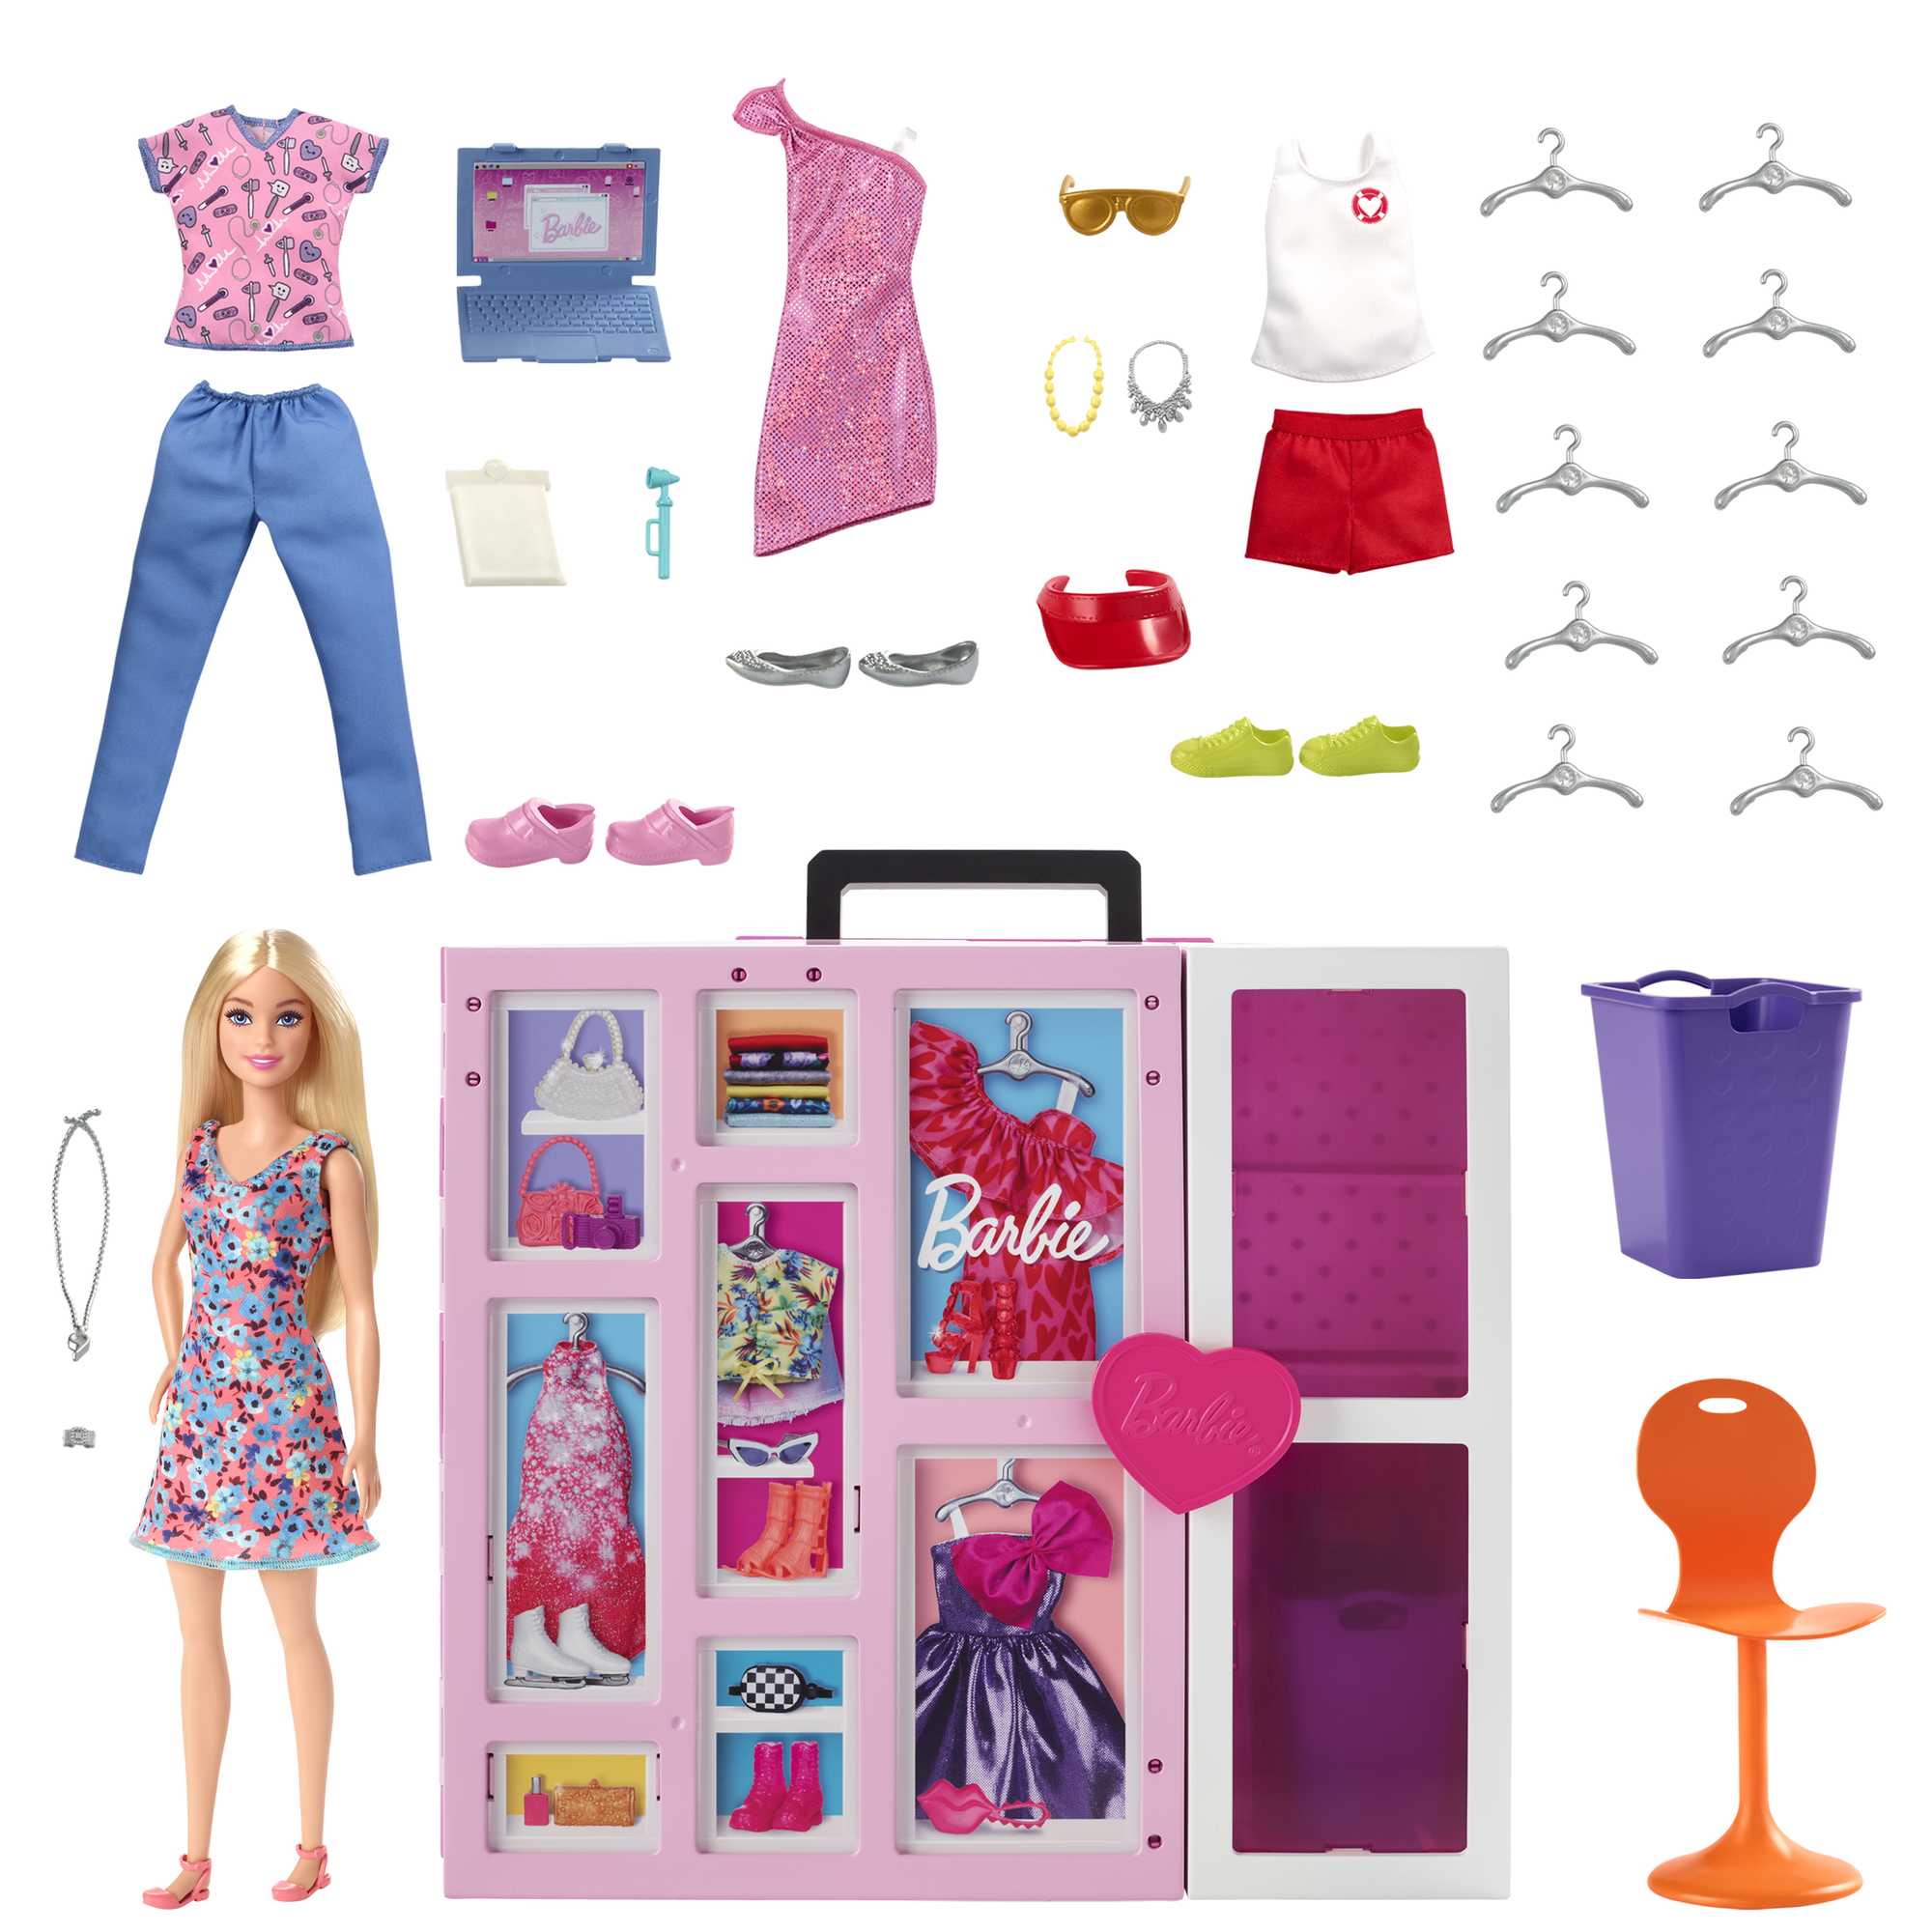 5 Surprise Mini Fashion Dream Wardrobe Playset [Includes 10+ Accessories!]